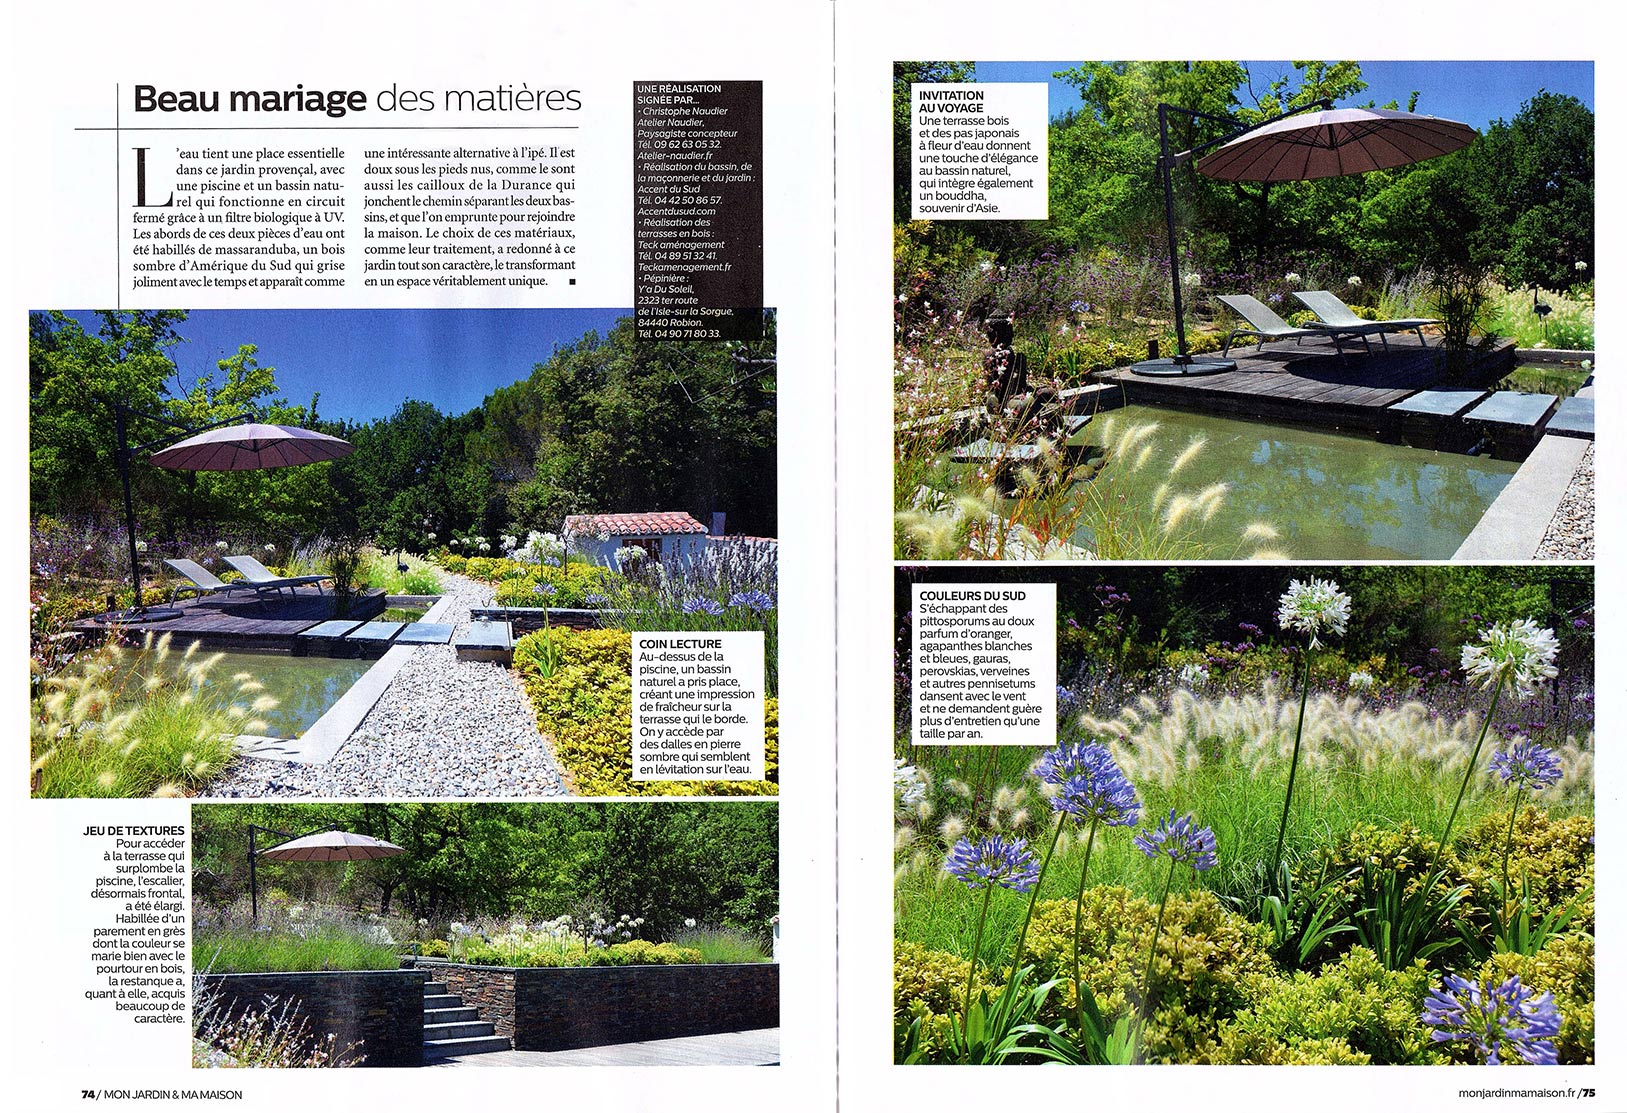 Atelier Naudier - Architecte paysagiste concepteur - Montpellier & Aix-en-Provence - Mon jardin & ma maison - Page 1 - aménagement jardin